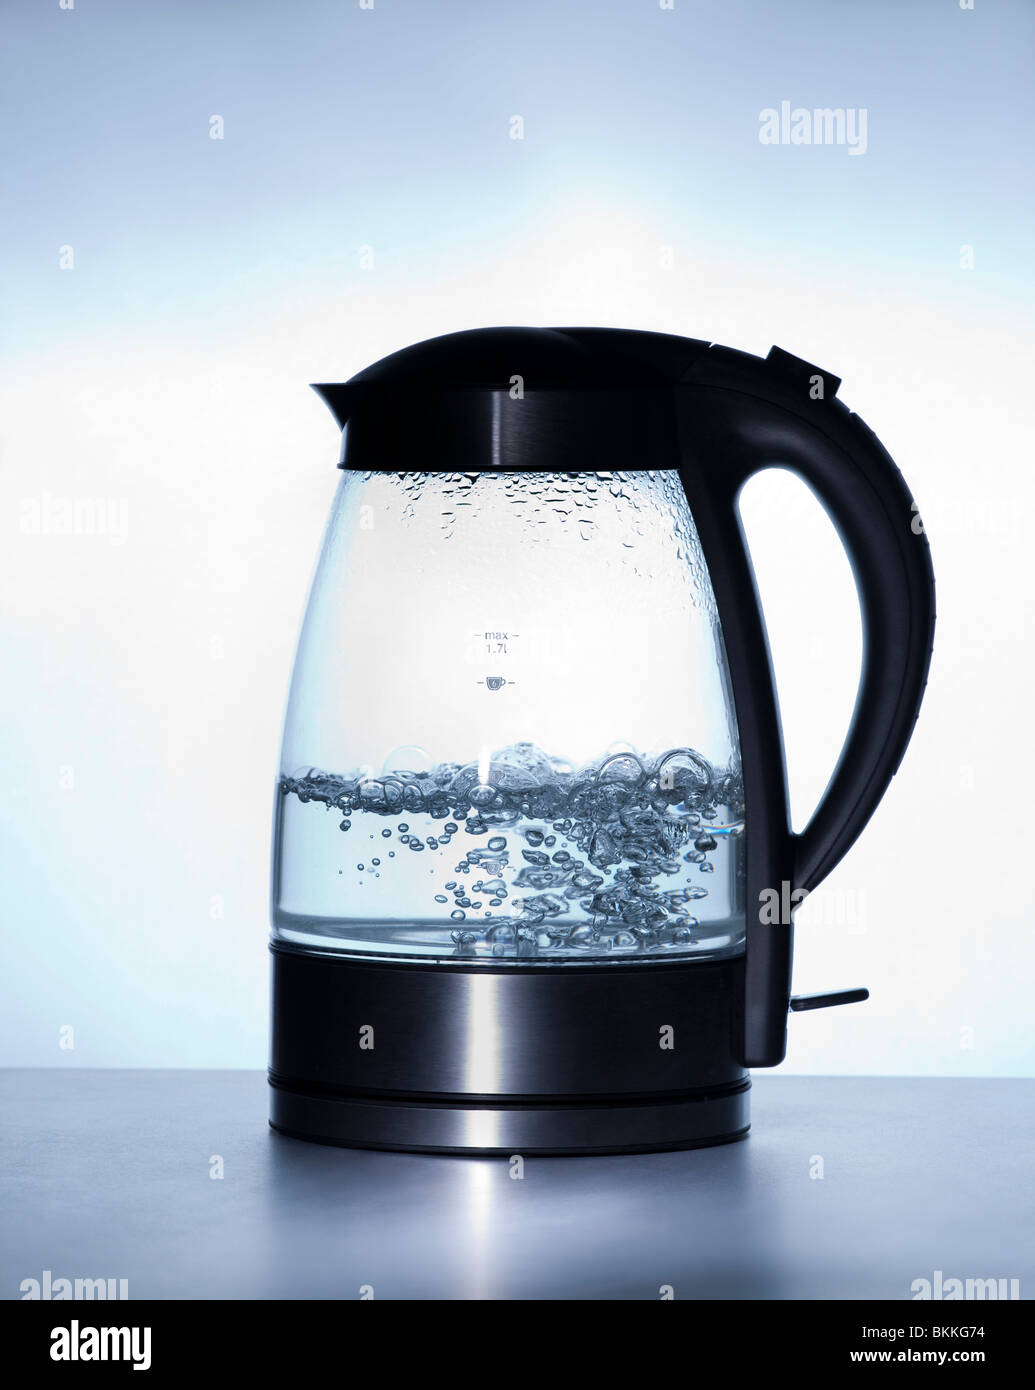 https://c8.alamy.com/comp/BKKG74/modern-electric-kettle-boiling-water-using-schott-duran-heatproof-BKKG74.jpg